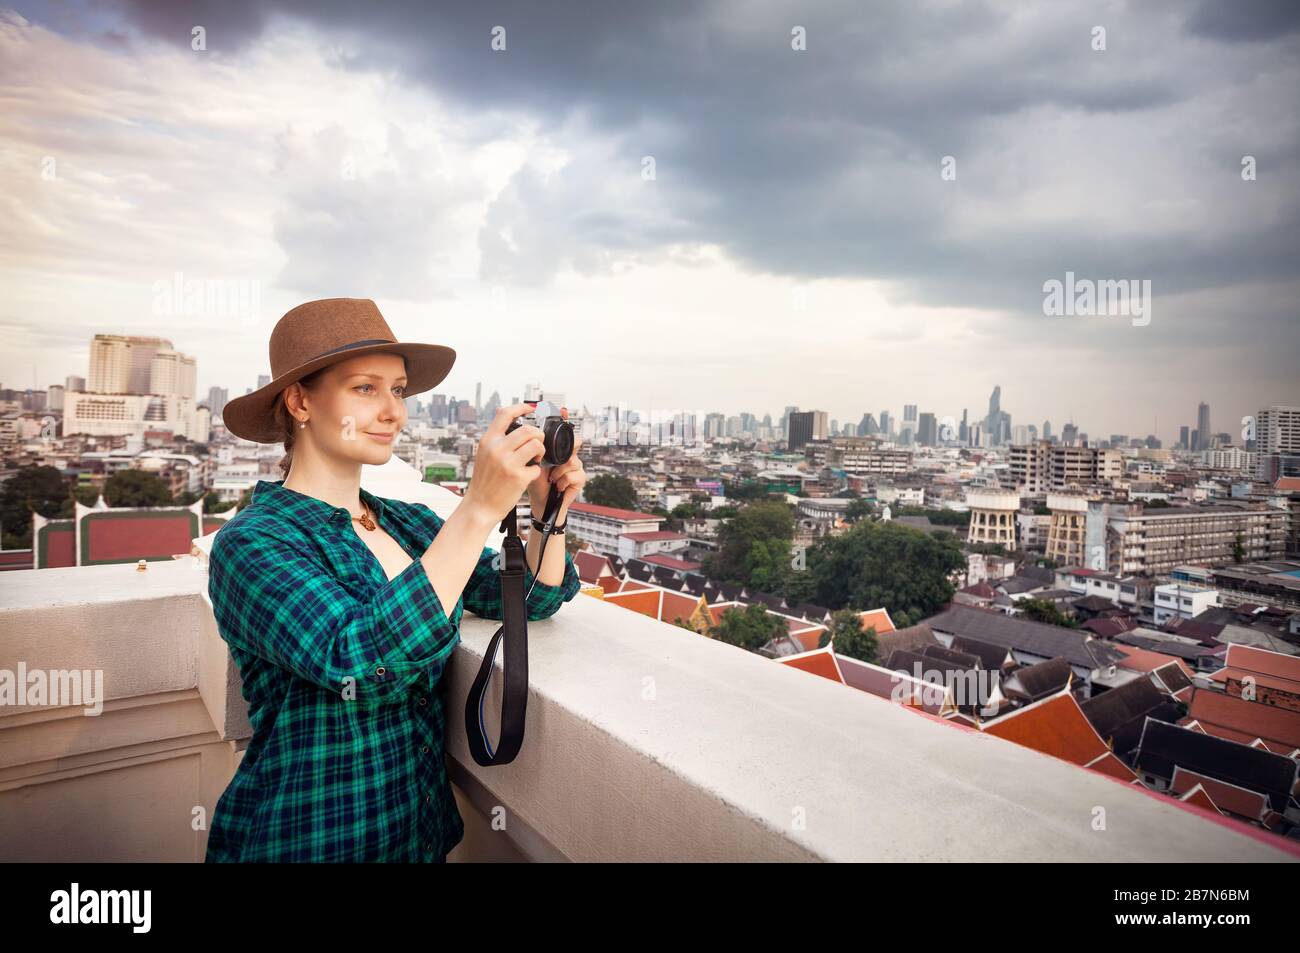 Touristischen Frau fotografieren mit Retro-Style-Kamera im Bangkok City Panorama mit Wolkenkratzern des Geschäftsviertels von Golden Mountain Wat Saket ro Stockfoto